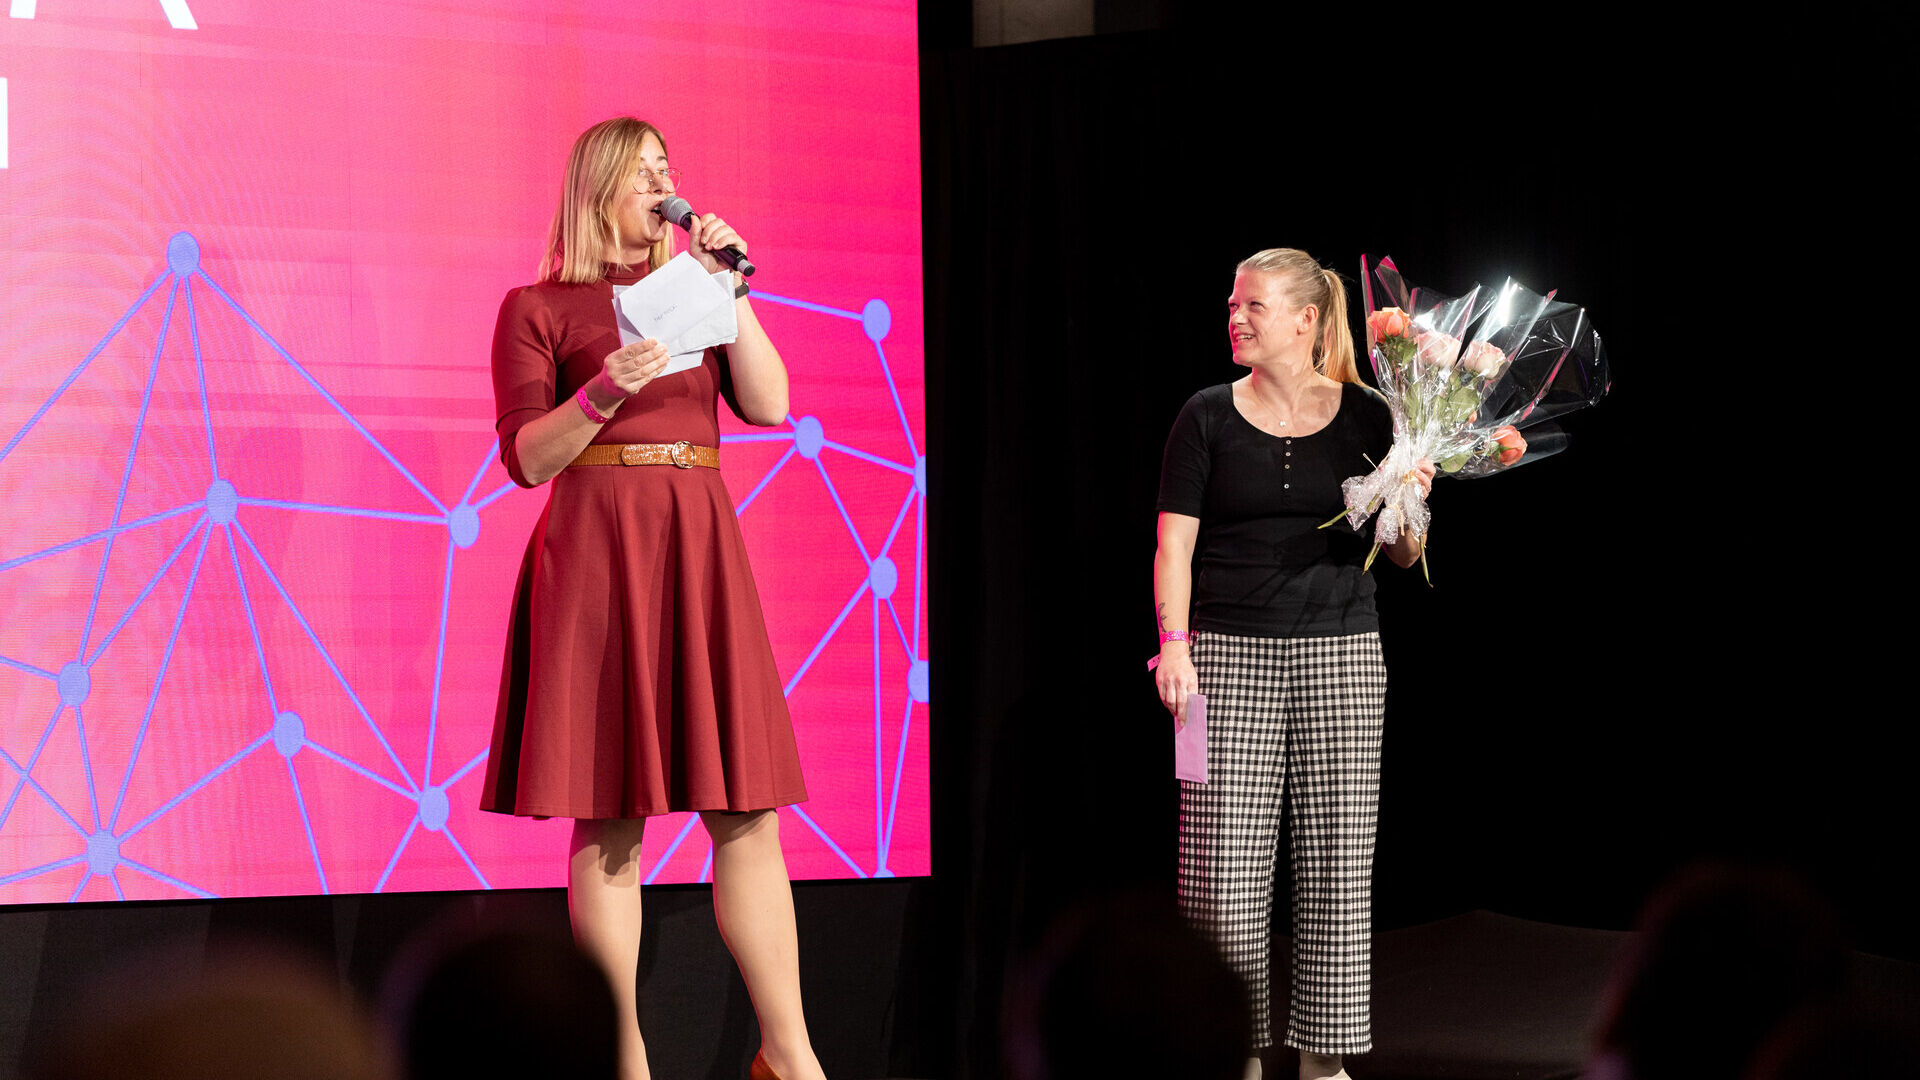 Giornate Digitali Svizzere: l’evento conclusivo delle “Giornate Digitali Svizzere” 2022 alla Freiruum di Zugo (Zugo) il 27 ottobre: la premiazione dell’hackaton femminile “herHACK” con la vittoria di Greender